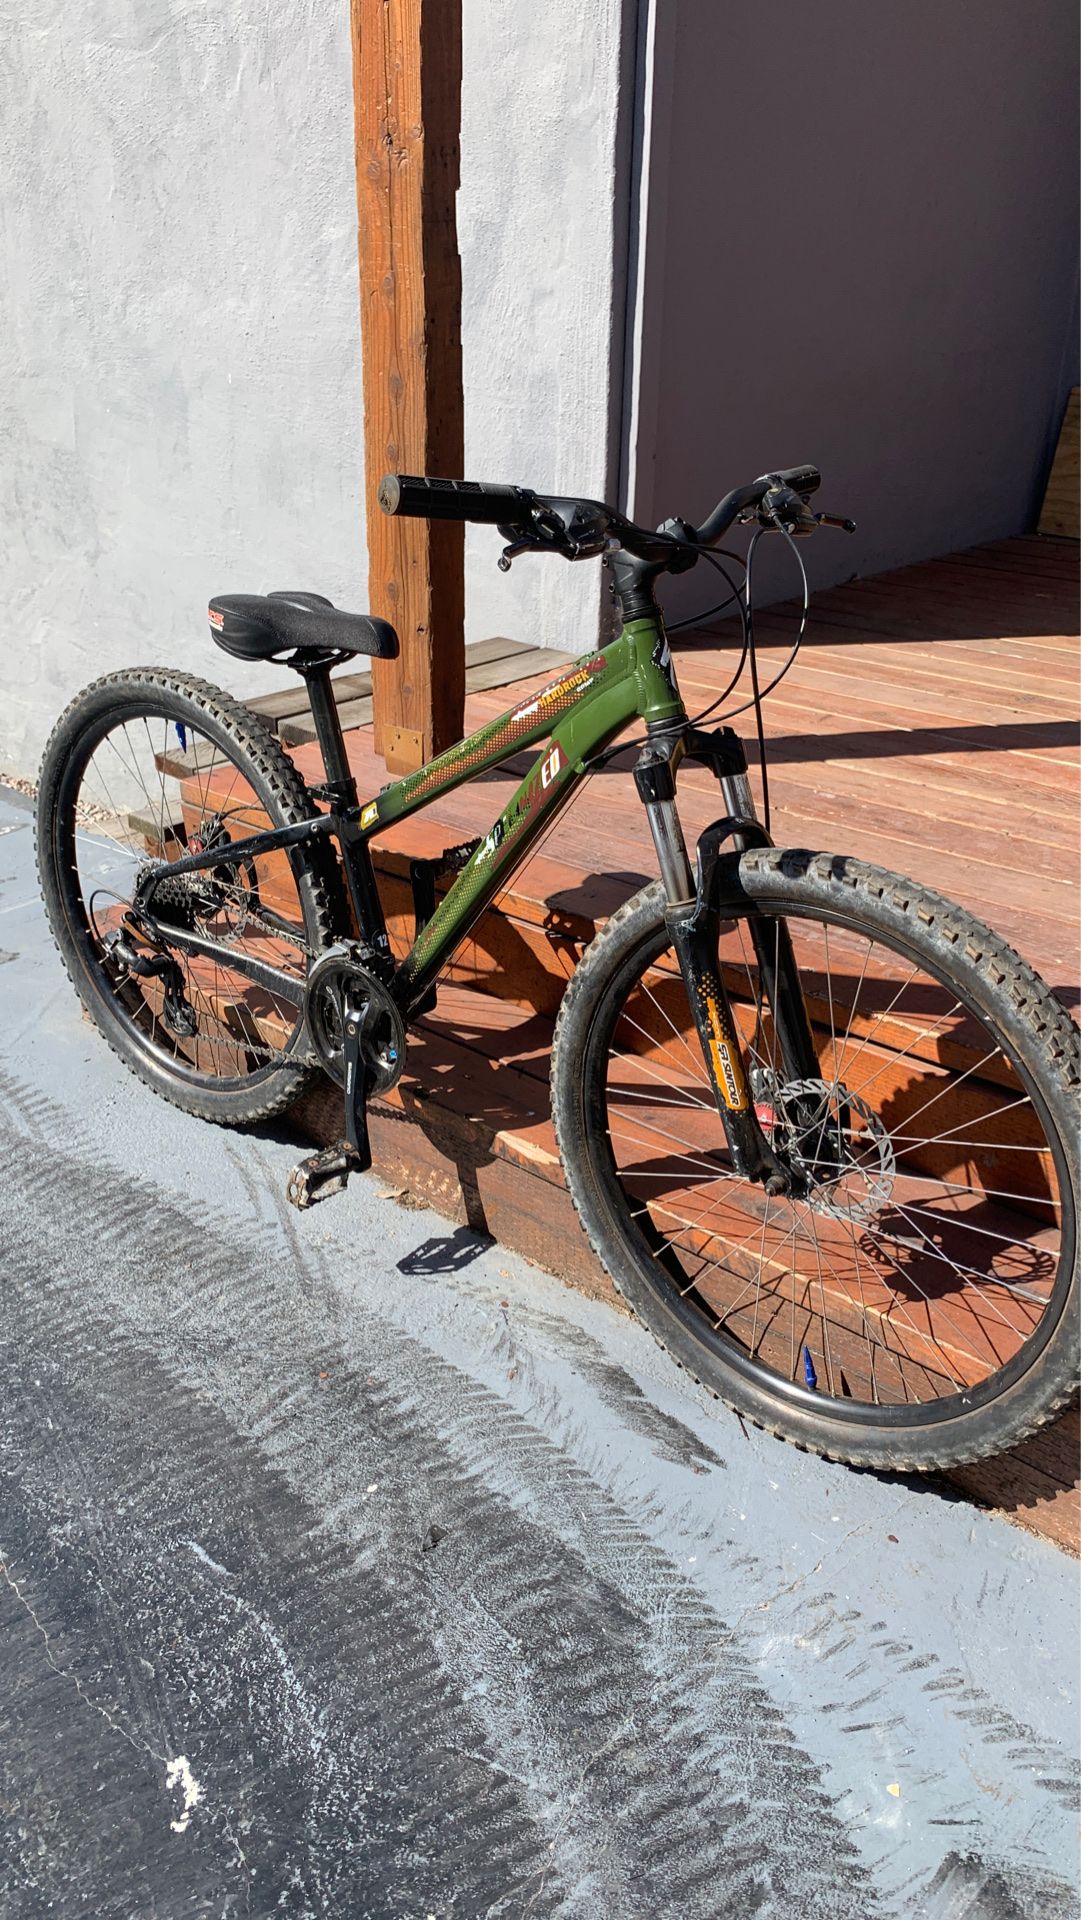 Specialized hard rock mountain bike